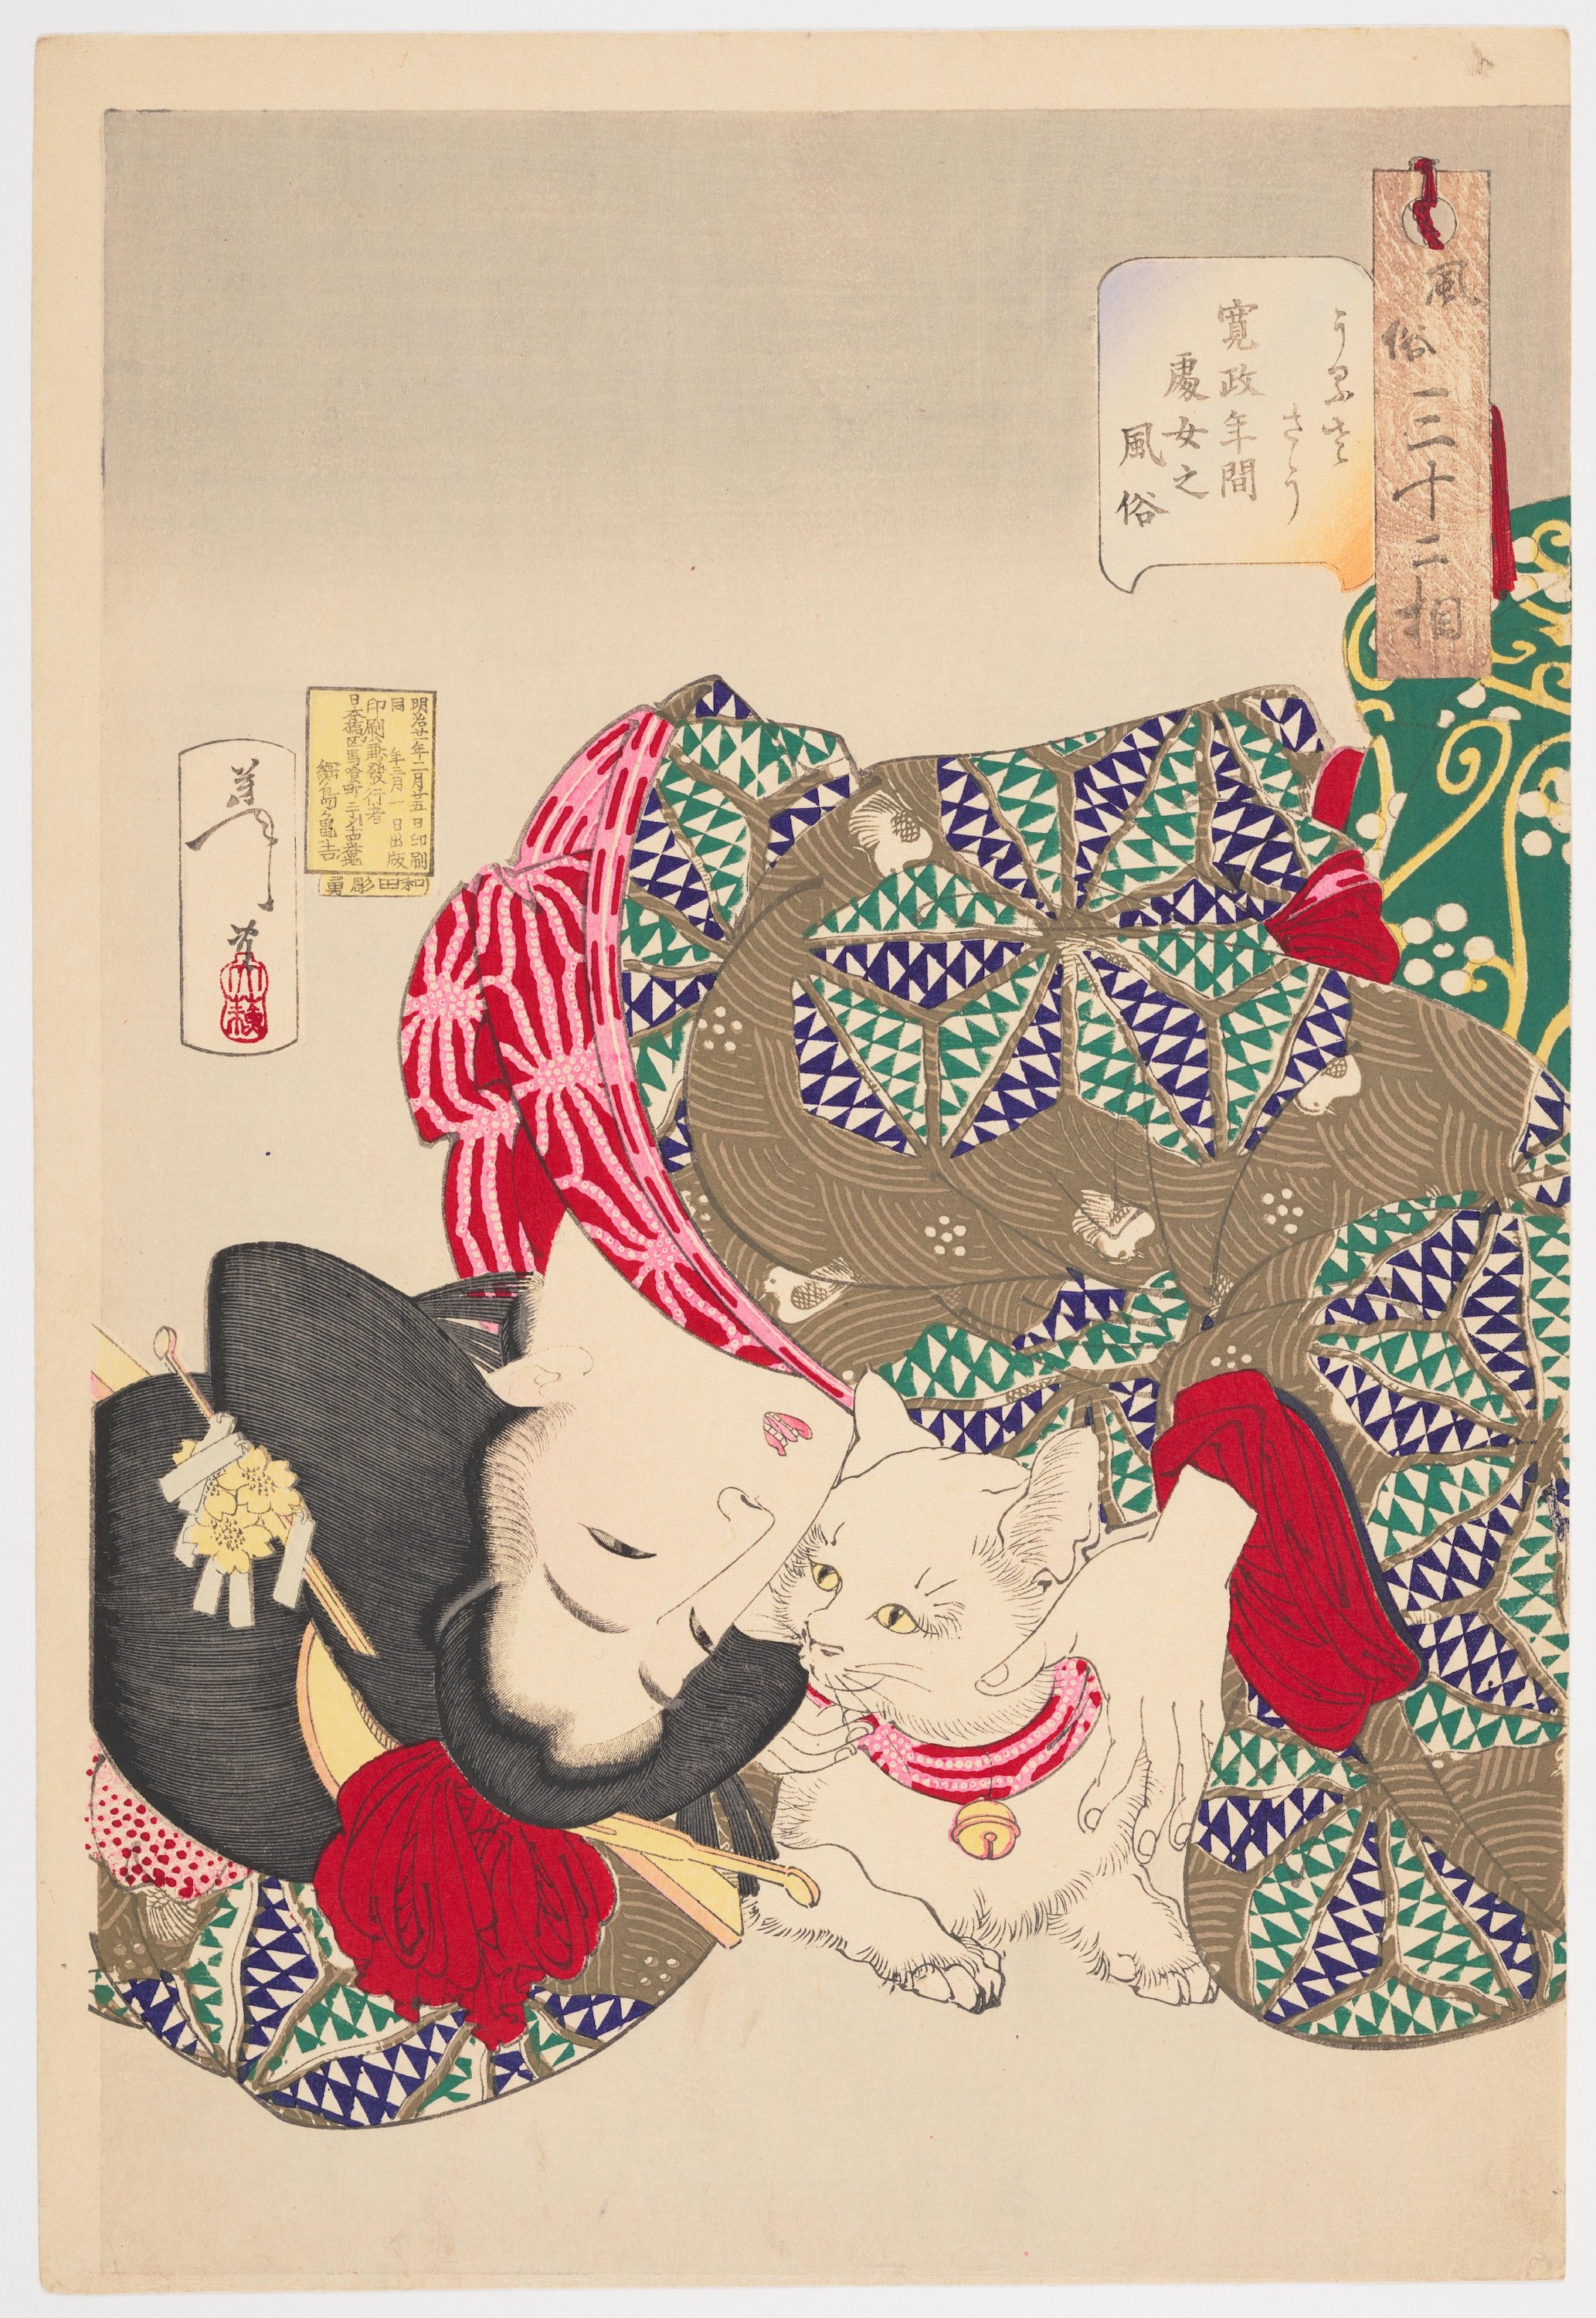 시끄럽다: 간세이 시대의 젊은 여인 풍속도(Noisy: A Young Woman of the Kansei Period with a Purring Cat) by Tsukioka Yoshitoshi - 1888 - 39.4 cm × 26.7 cm 